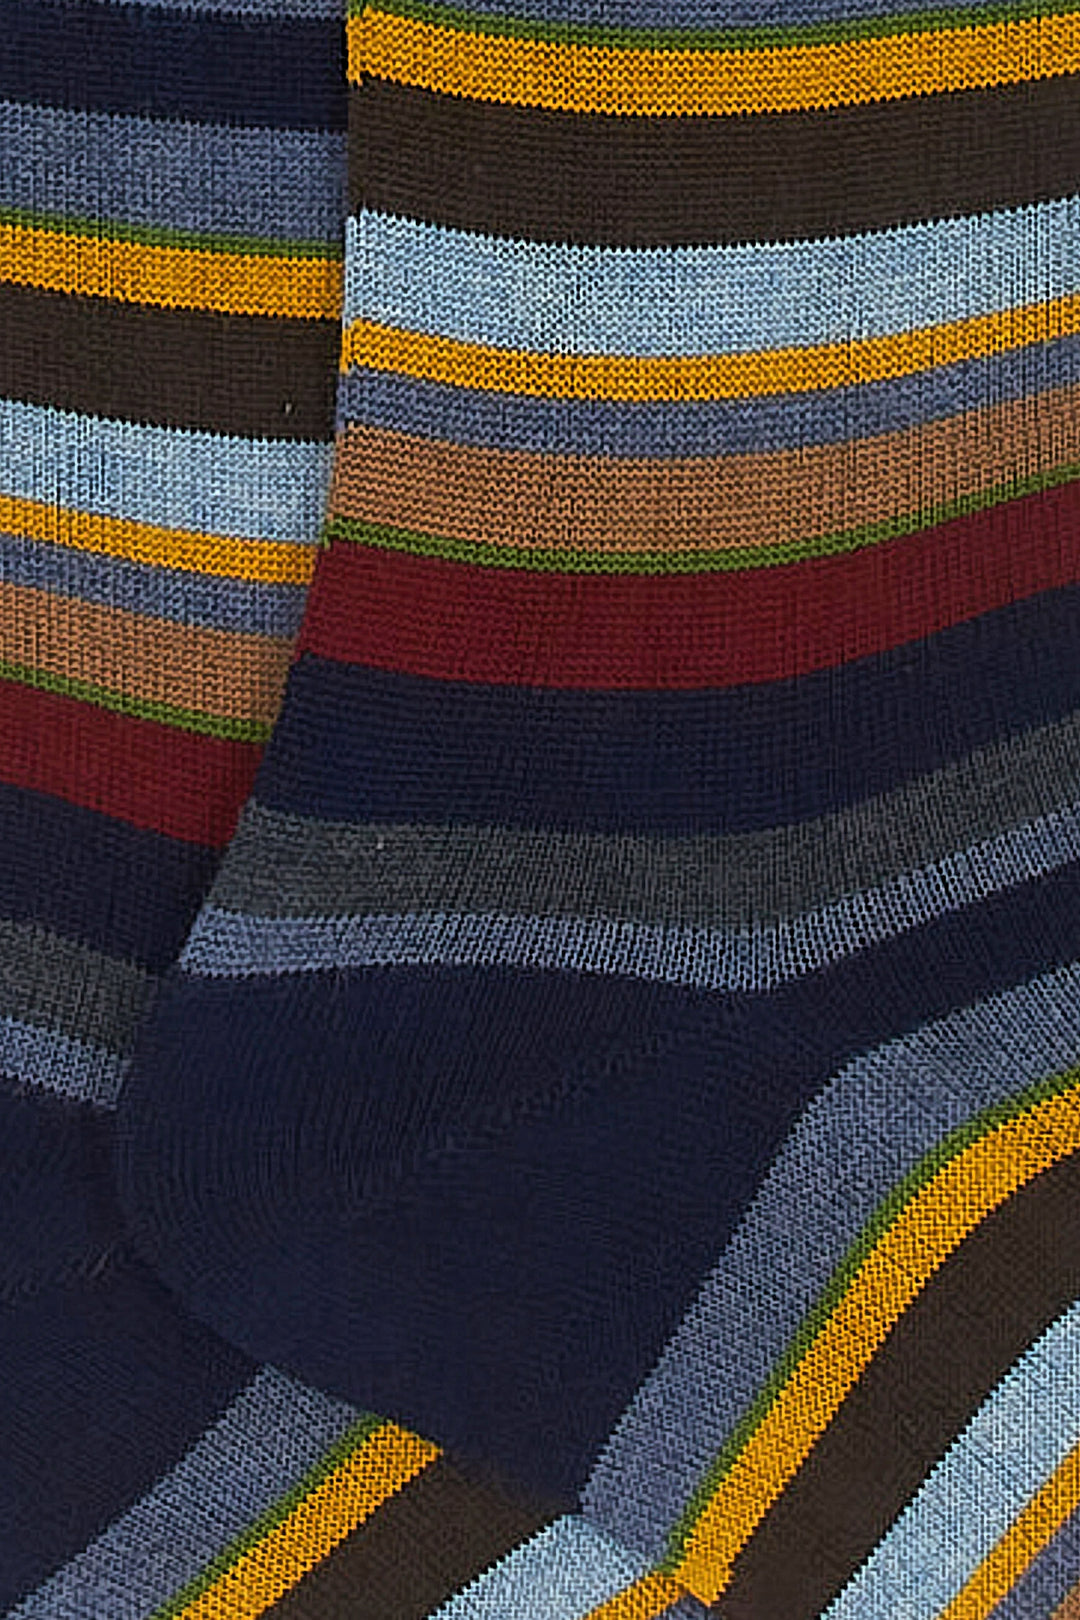 GALLO Calze lunghe cotone e cashmere blu navy righe multicolor micro - Mancinelli 1954